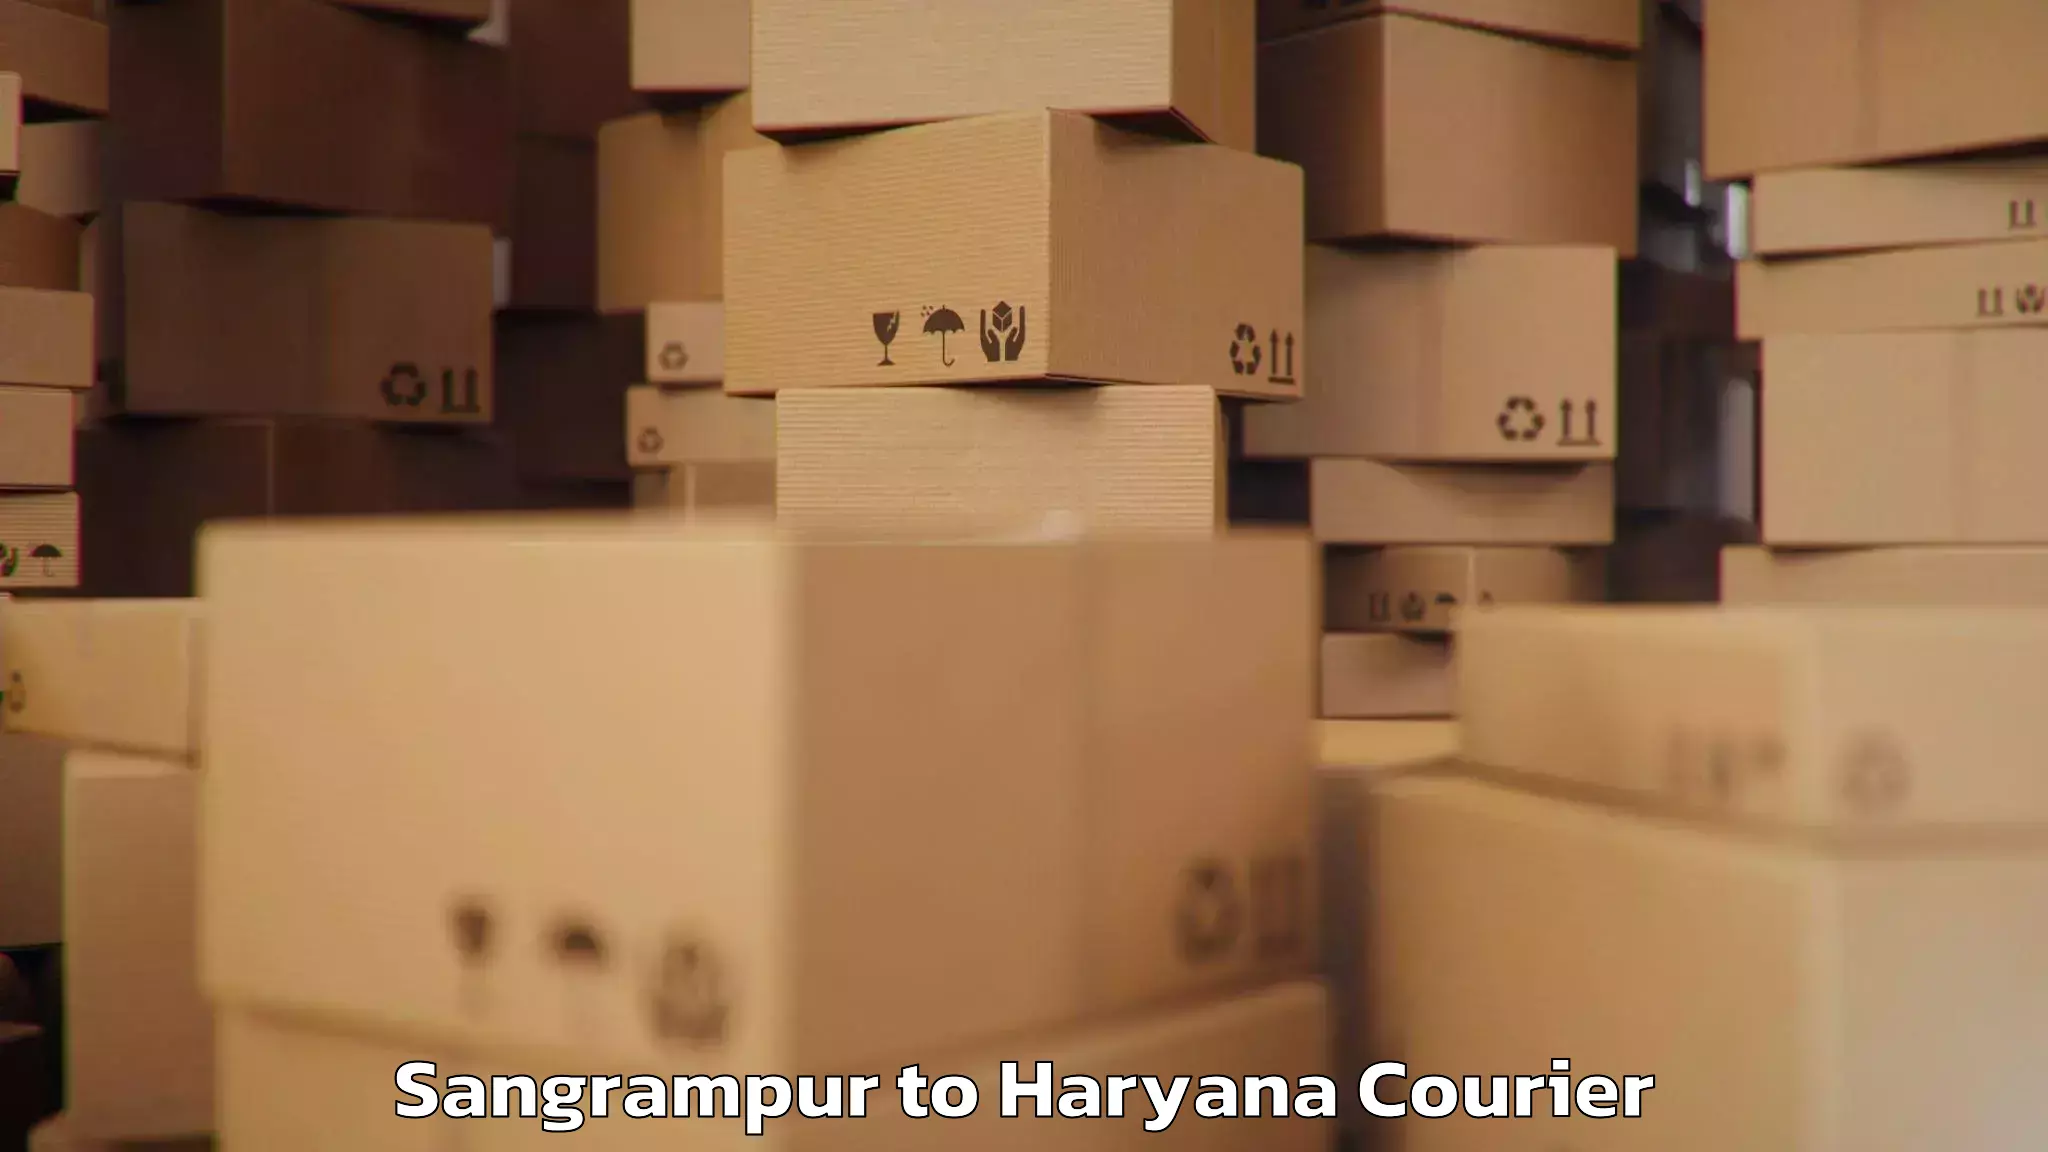 Baggage transport coordination Sangrampur to Siwani